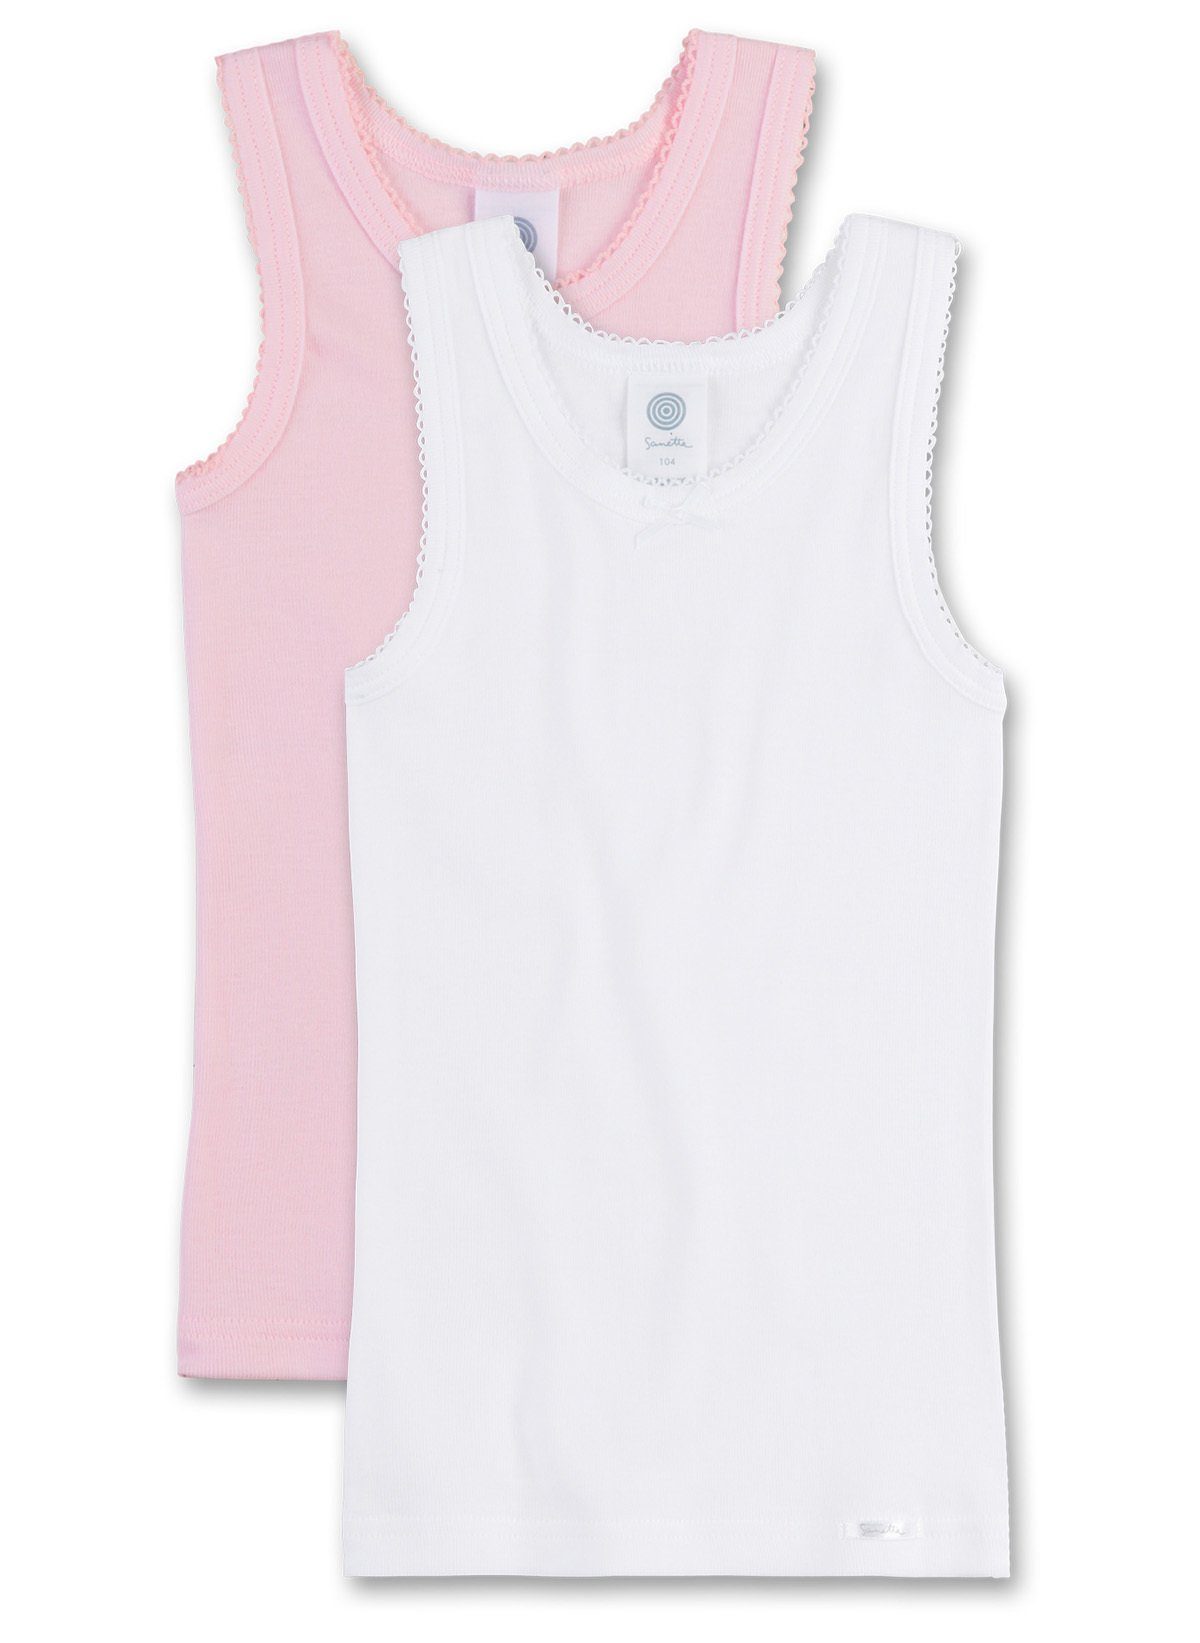 Sanetta Unterhemd Mädchen Unterhemd, 2er Pack - Shirt ohne Arme, Top